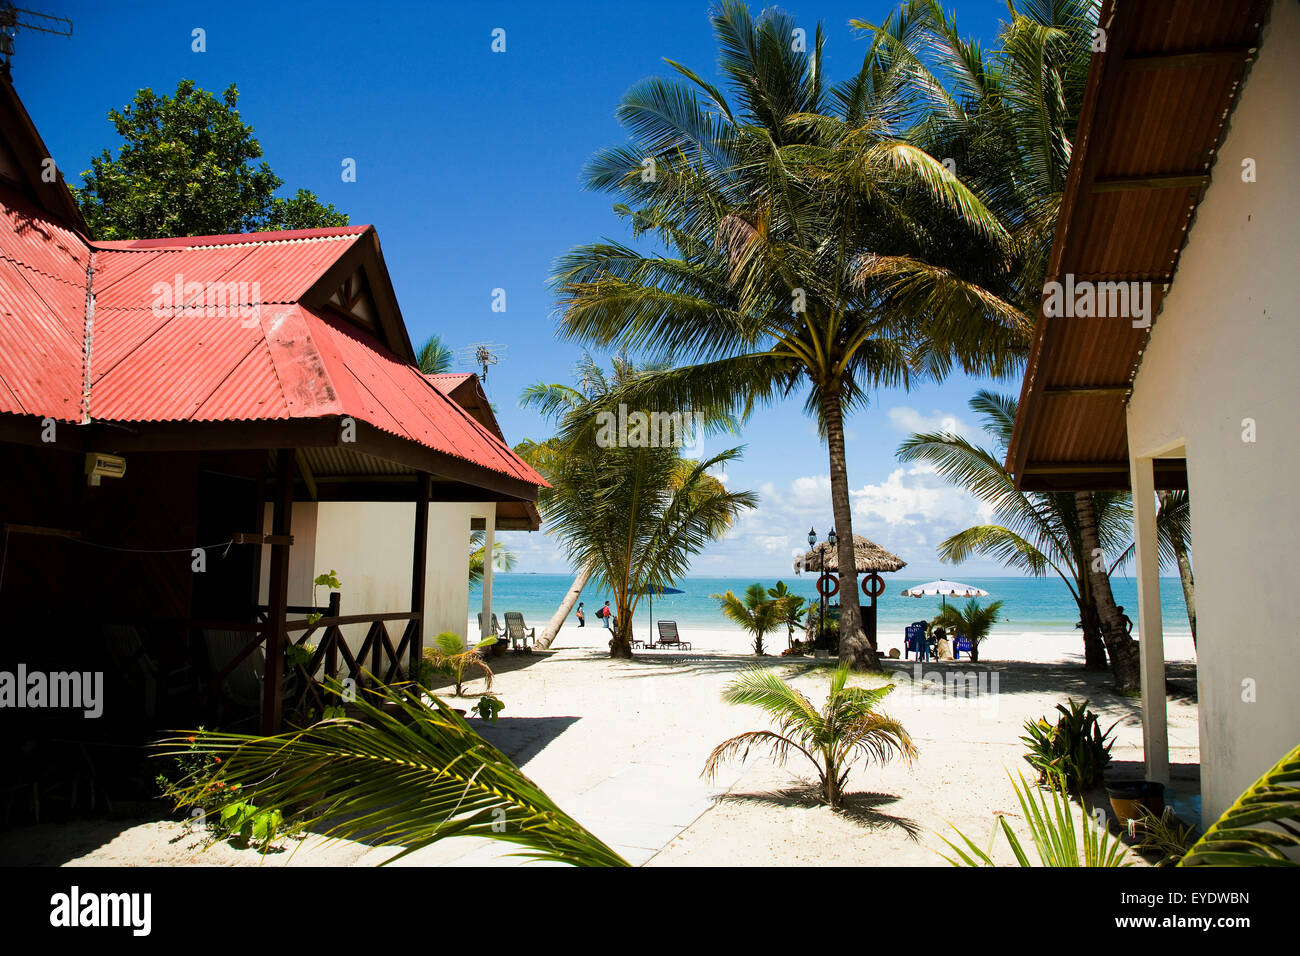 La Malaisie, Pantai Cenang (Cenang Beach) ; Pulau Langkawi, cabines de plage sur la plage de sable blanc avec des palmiers Banque D'Images